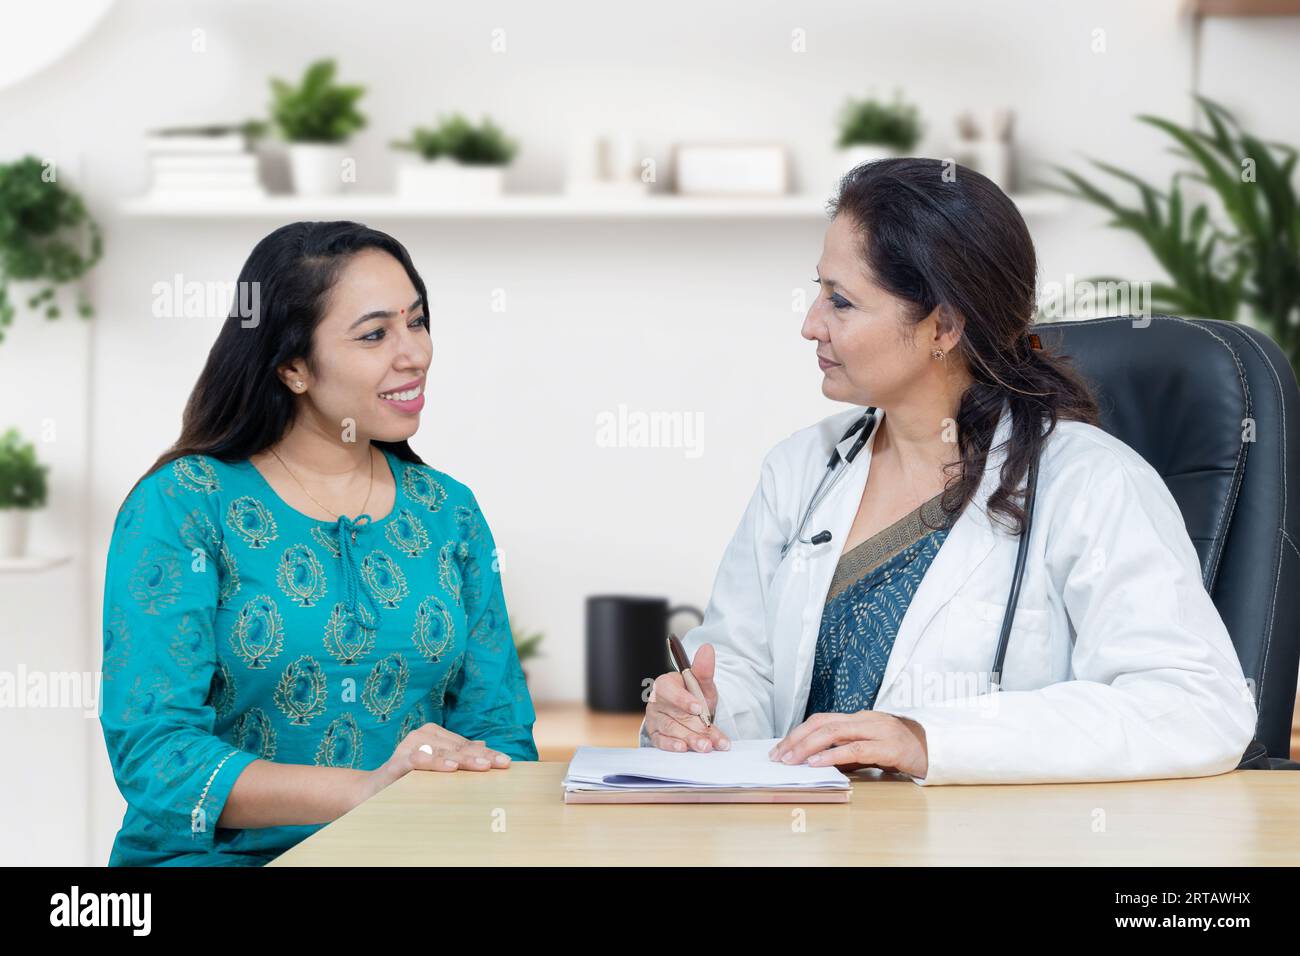 La giovane donna indiana si consulta sul suo problema con la ginecologa donna dottore in clinica moderna. Foto Stock